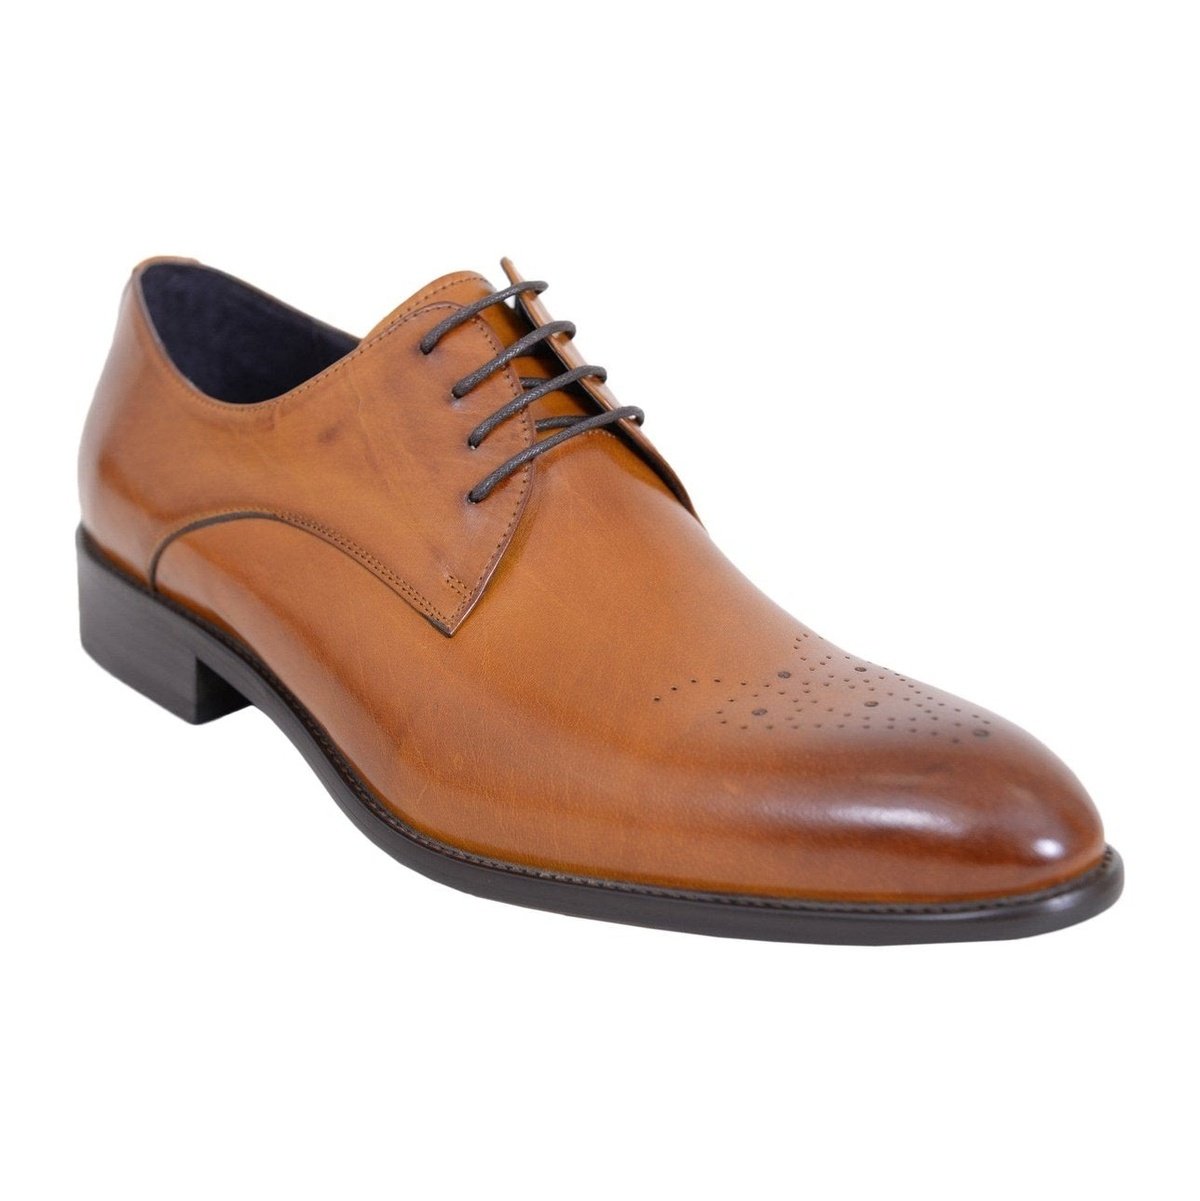 Carrucci Shoes For Amazon 10.5 D-M Carrucci Men's Genuine Leather Cognac Brown Lace Up Oxford Brogues Dress Shoes